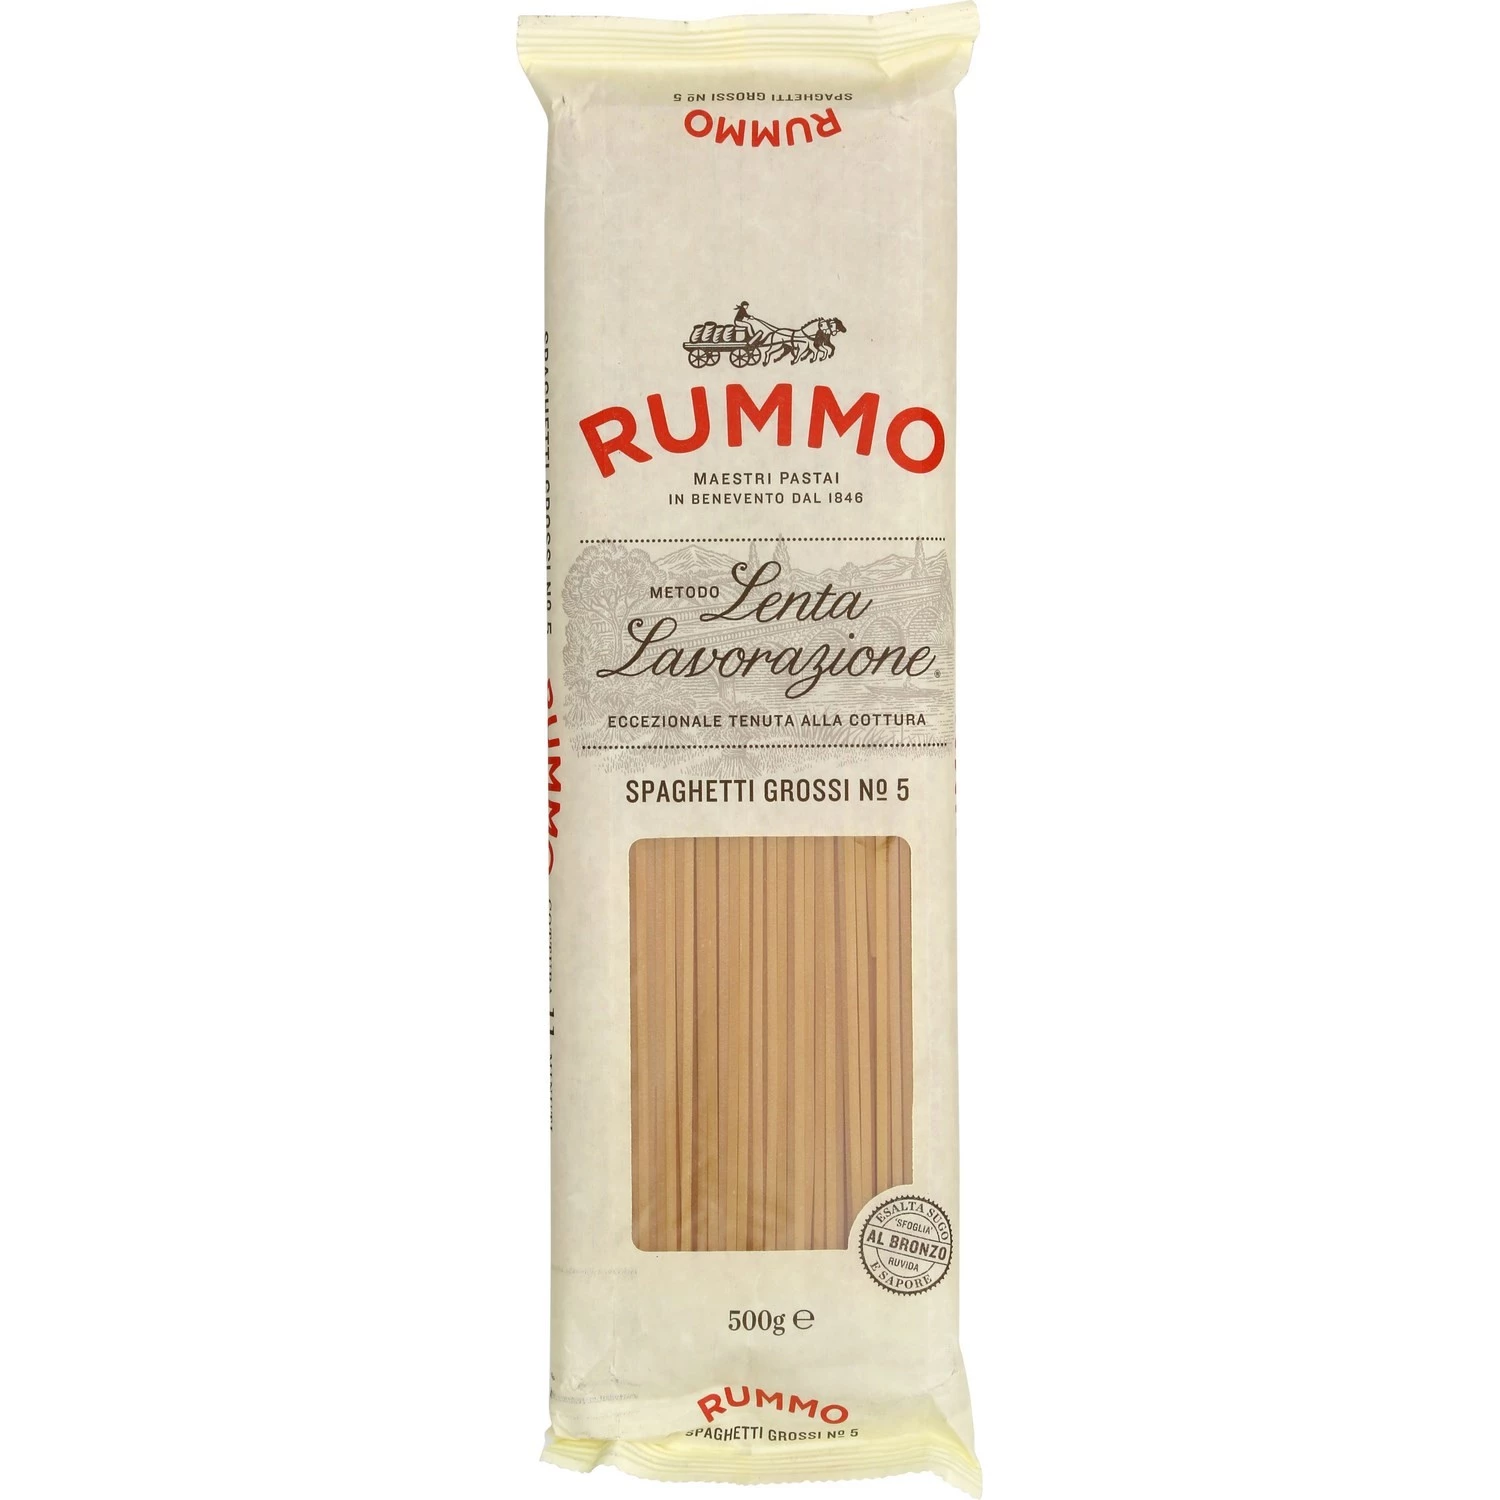 Spaghetti lordi n°5 500g - RUMMO